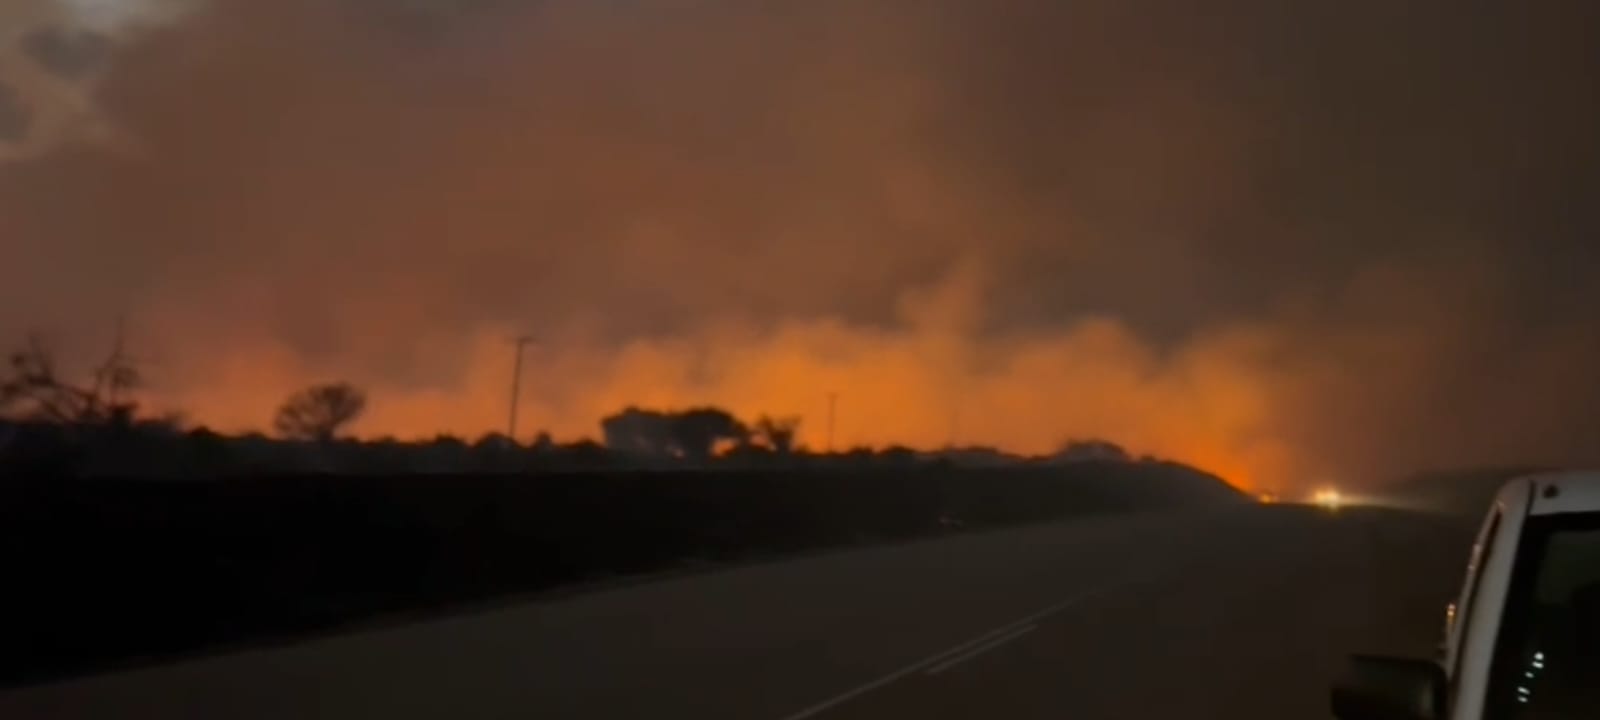 Kalahari burns fire